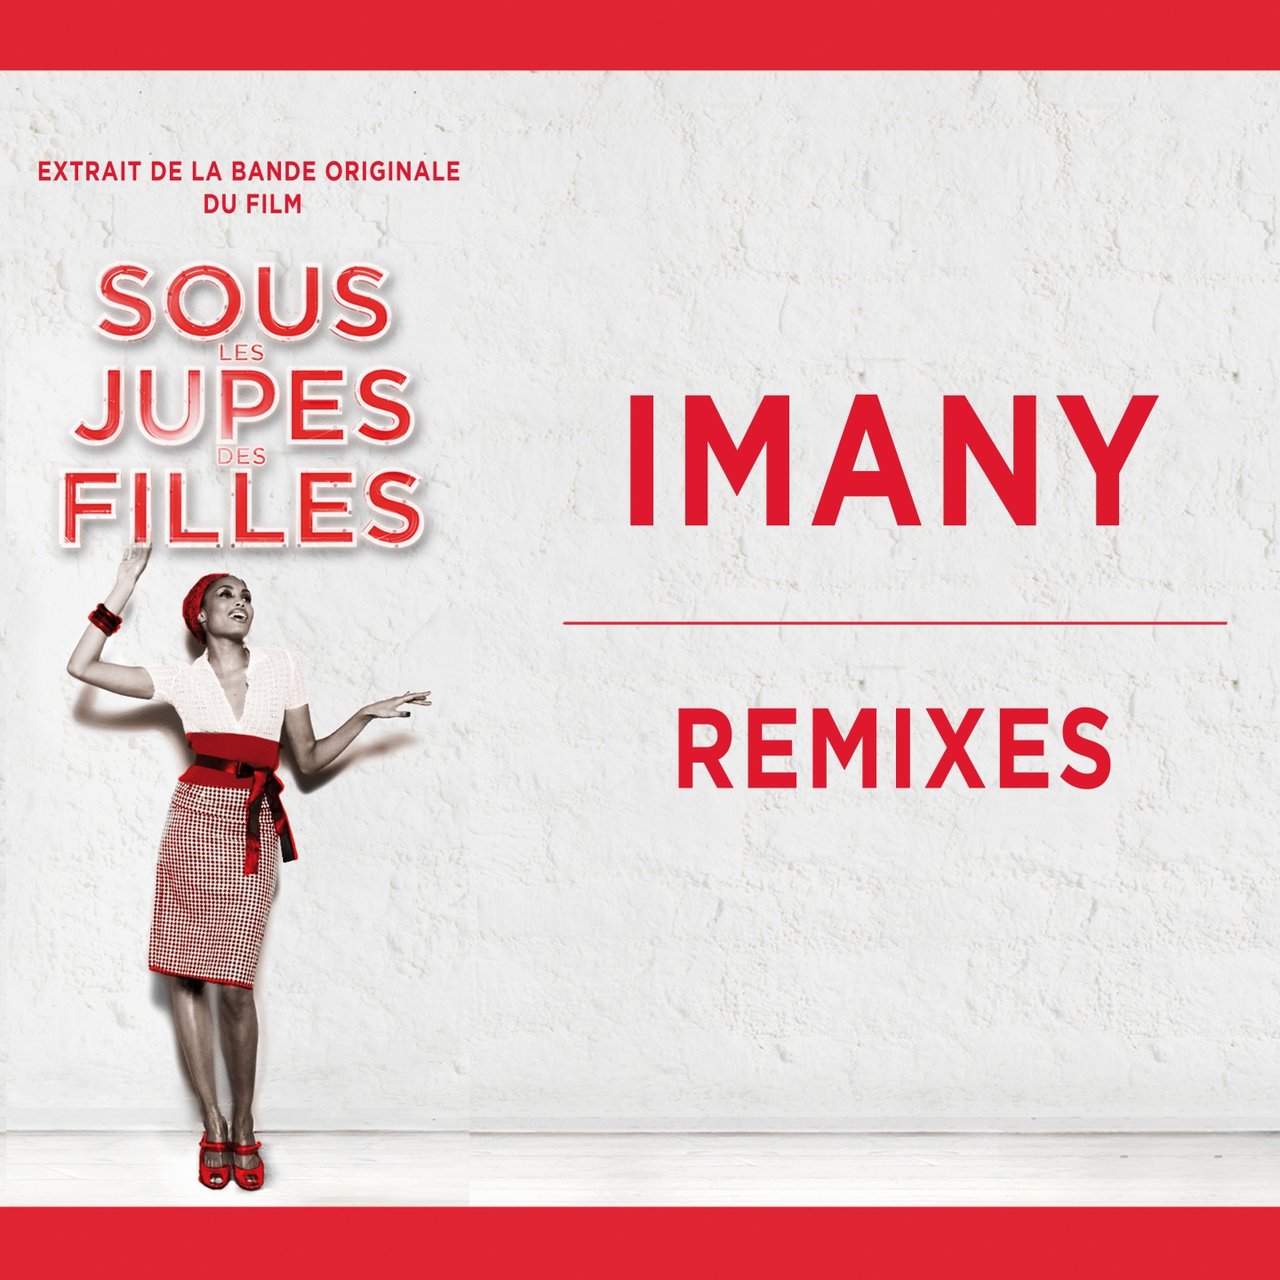 Imany Remixes (Extrait de la bande originale du film) cover artwork